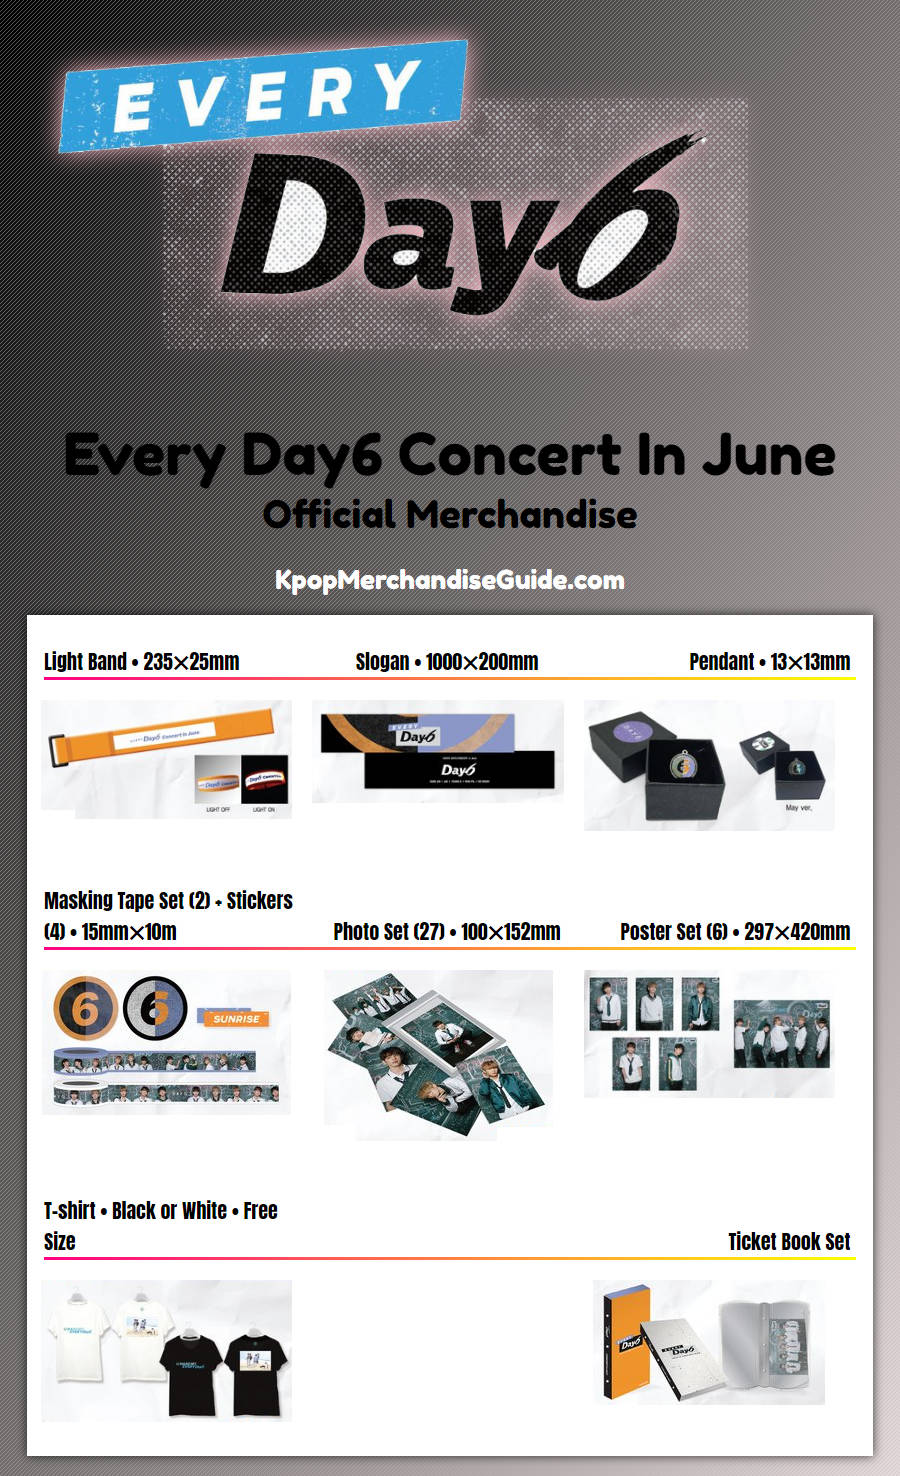 Every Day6 Concert In June Merchandise